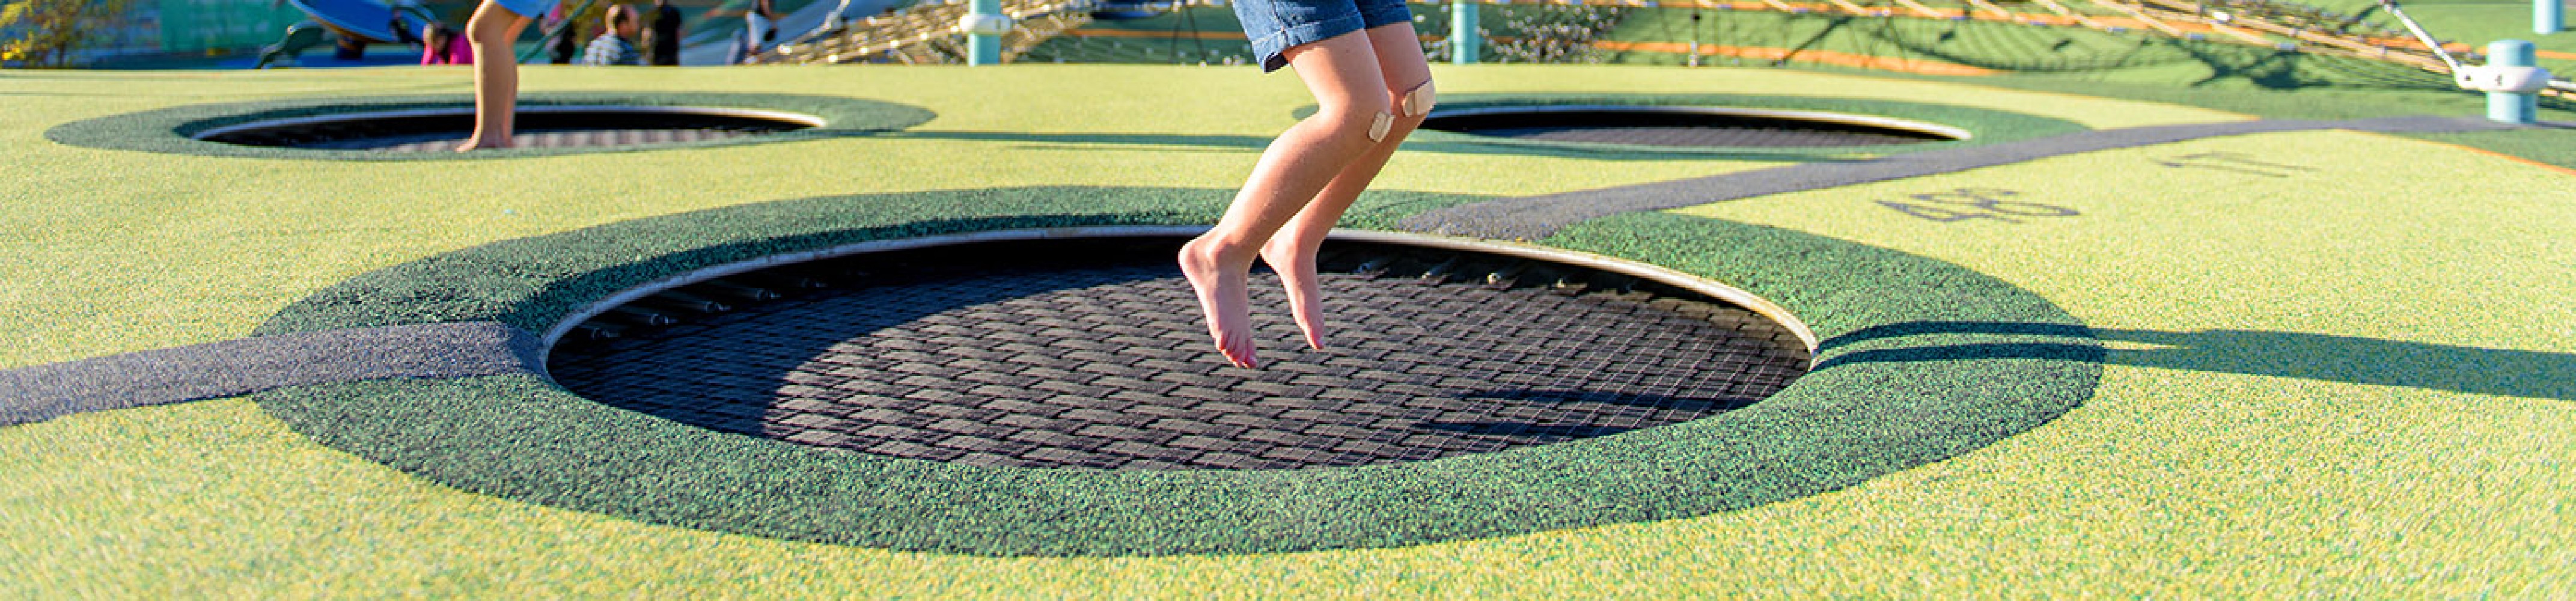 hüpfen-eingebautes-trampolin-kindergarten-schule-kinder-freude-spaß